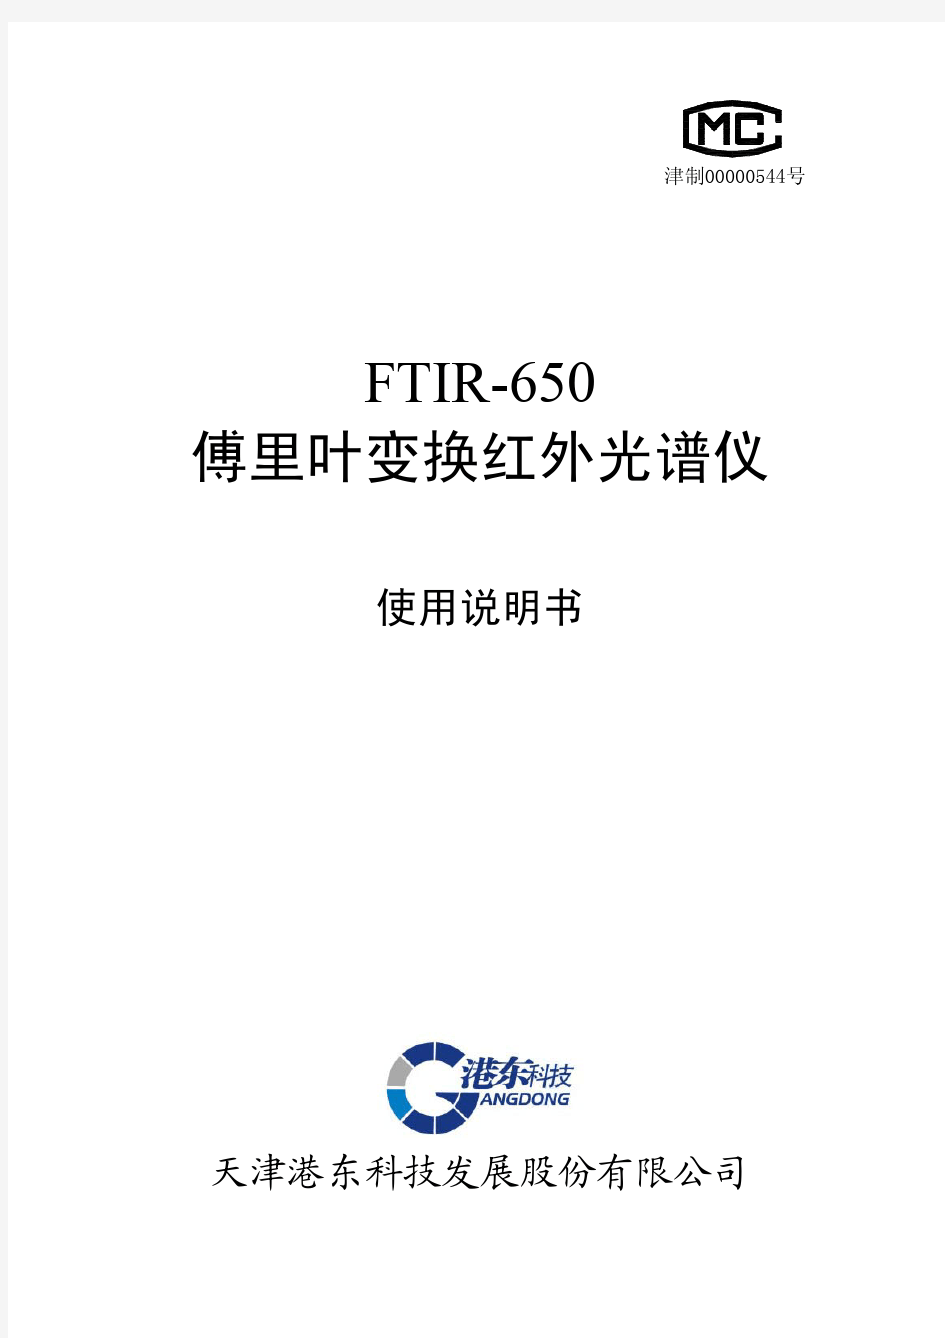 FTIR-650傅里叶变换红外光谱仪使用说明书